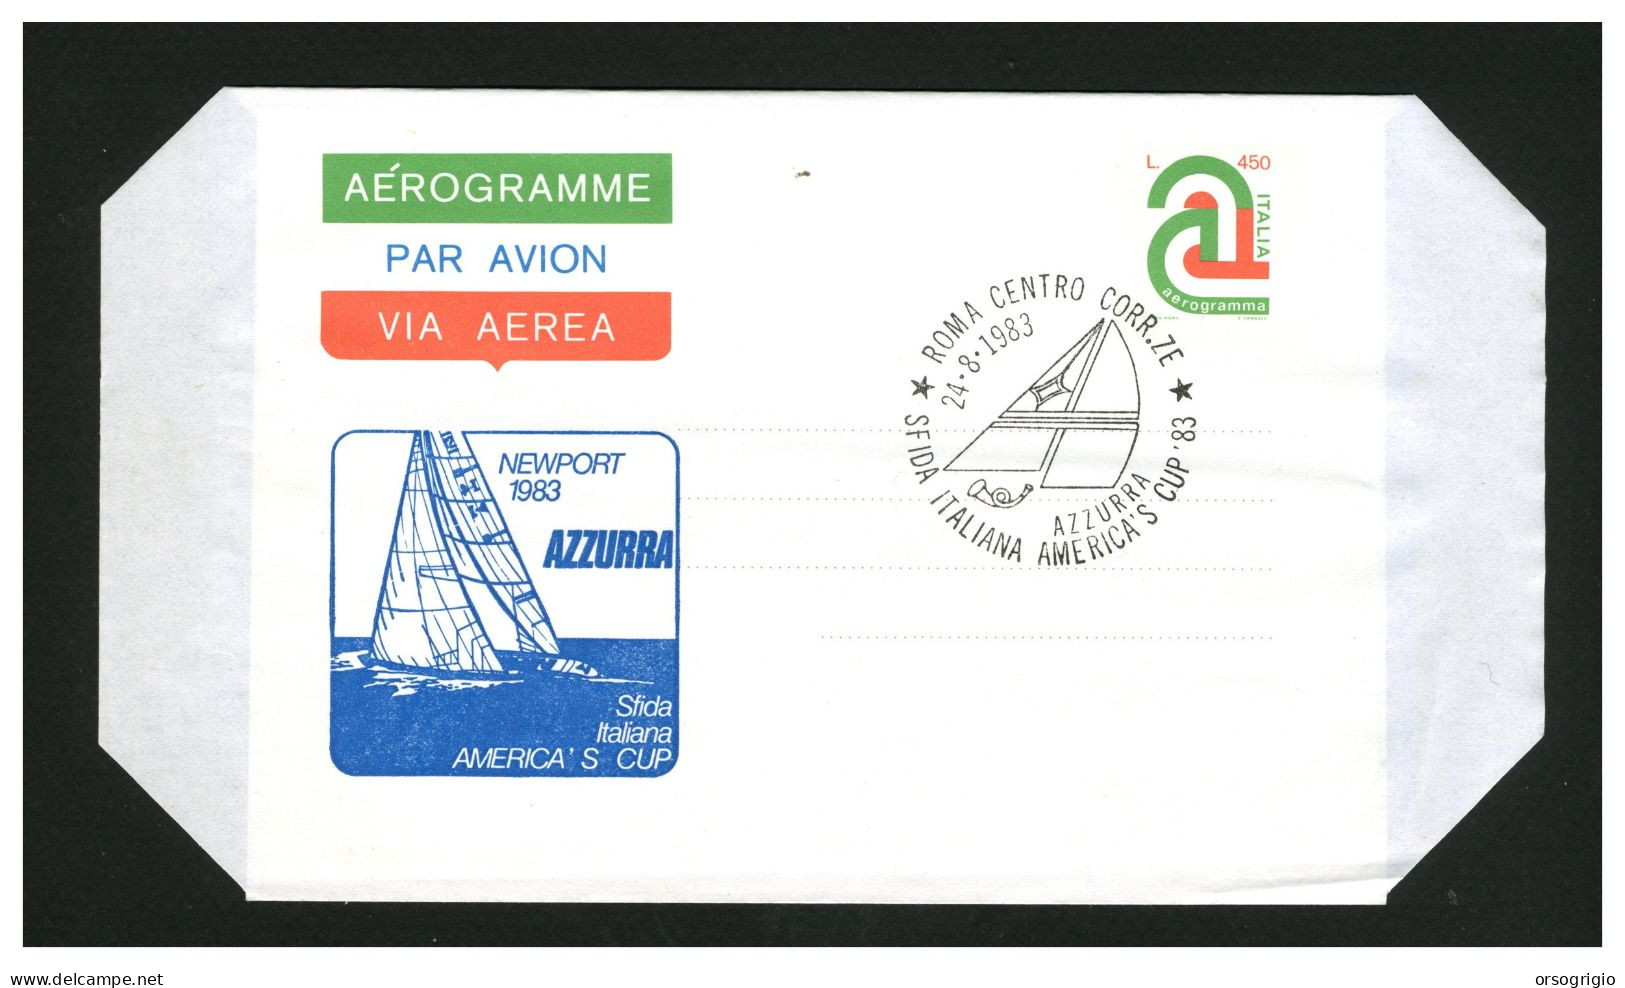 ITALIA - 1983 - AZZURRA - SFIDA ITALIANA AMERICA'S CUP - Sailing